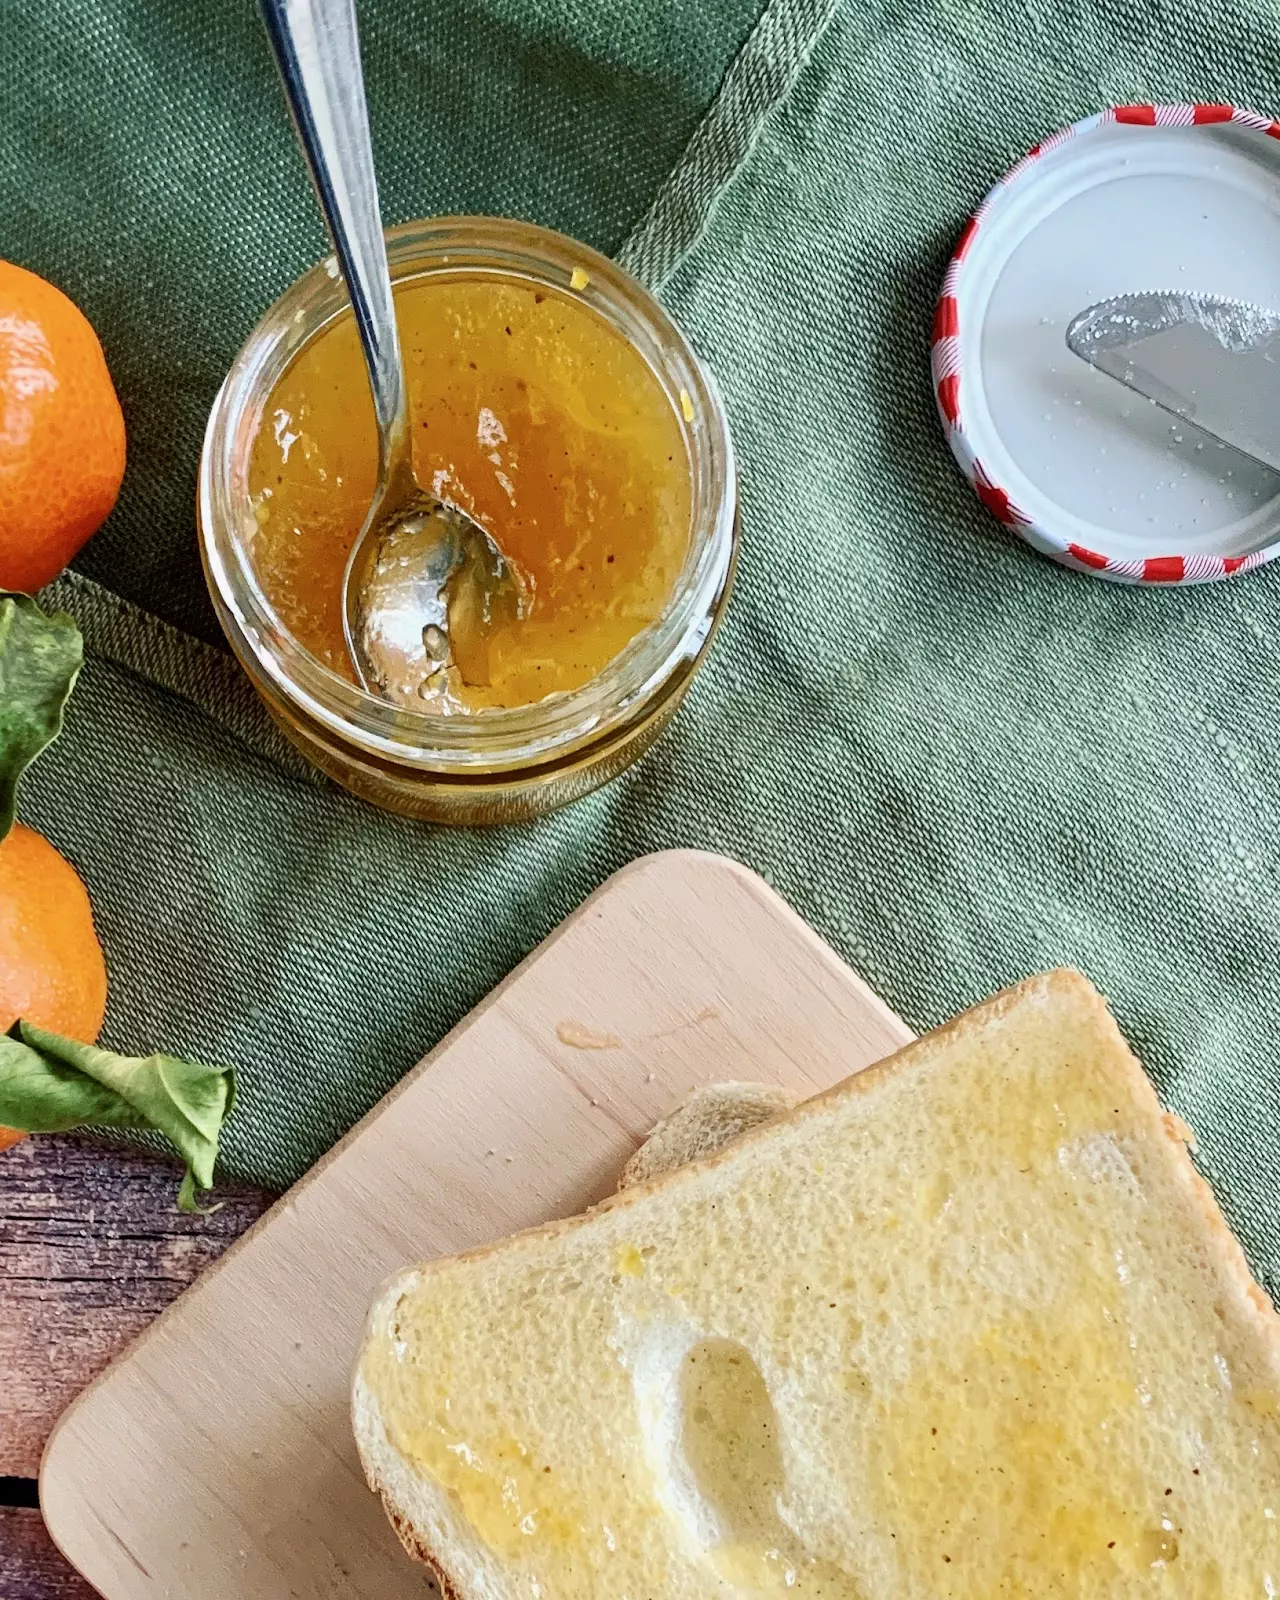 Super leckere Mandarinen-Vanille-Marmelade von LanisLeckerEcke | SCCC 2021: Türchen Nr. 15